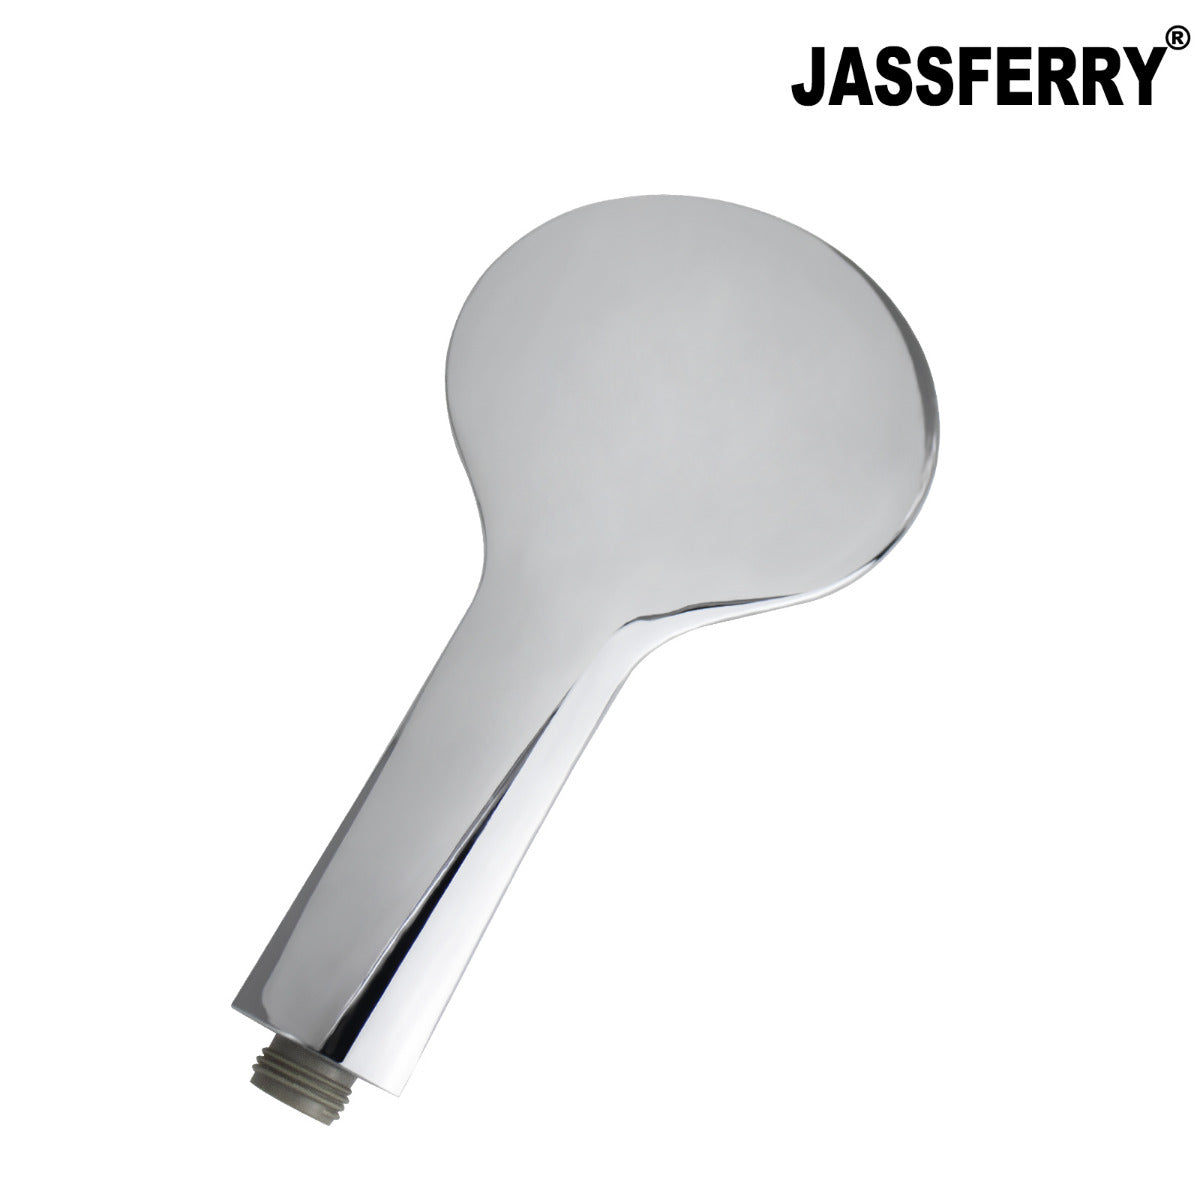 JassferryJASSFERRY New Chrome Shower Head Sets 5 Mode Massage Spray 4inch (10cm) ABSShower Heads